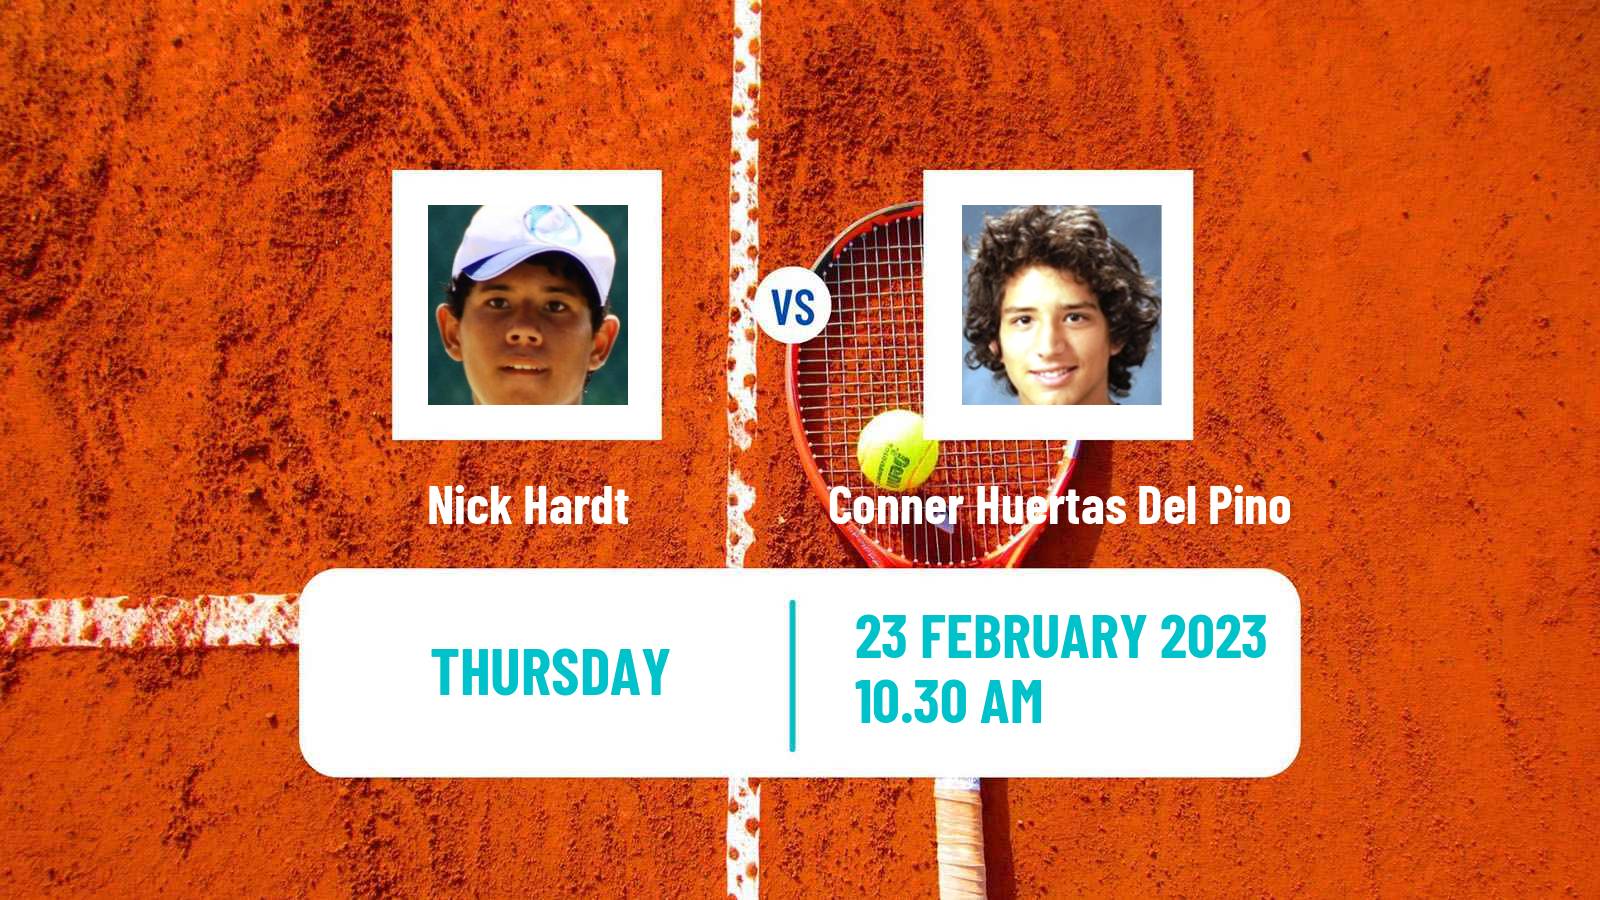 Tennis ITF Tournaments Nick Hardt - Conner Huertas Del Pino